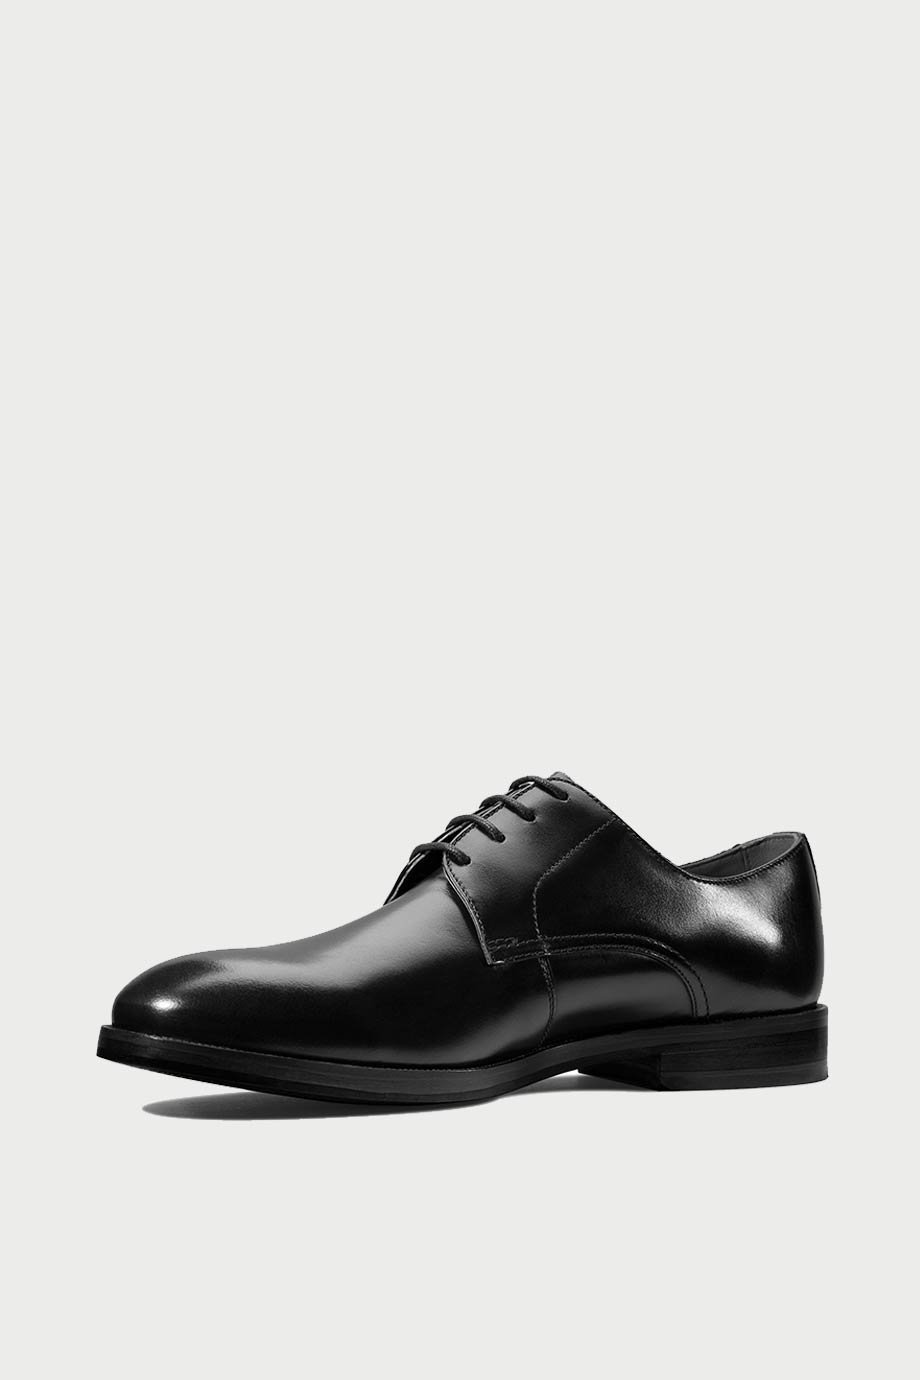 spiridoula metheniti shoes xalkida p oliver lace black leather clarks 4